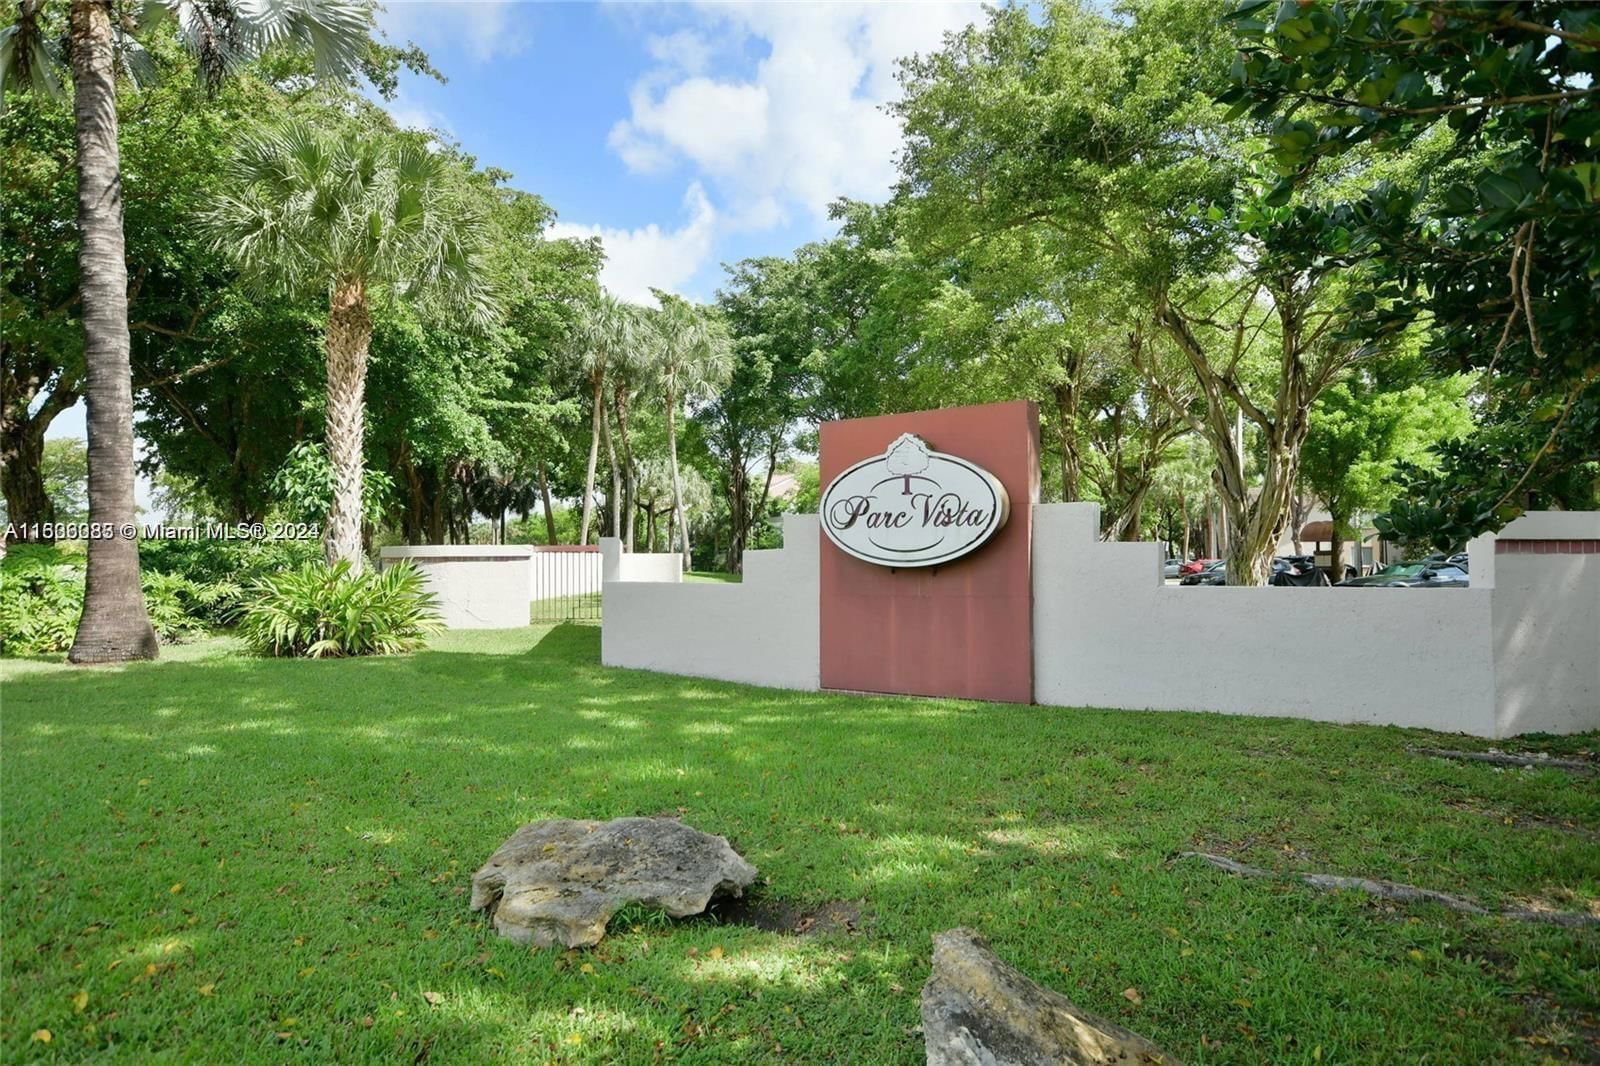 Real estate property located at 14052 91st Ter #14052, Miami-Dade County, PARC VISTA CONDO, Miami, FL